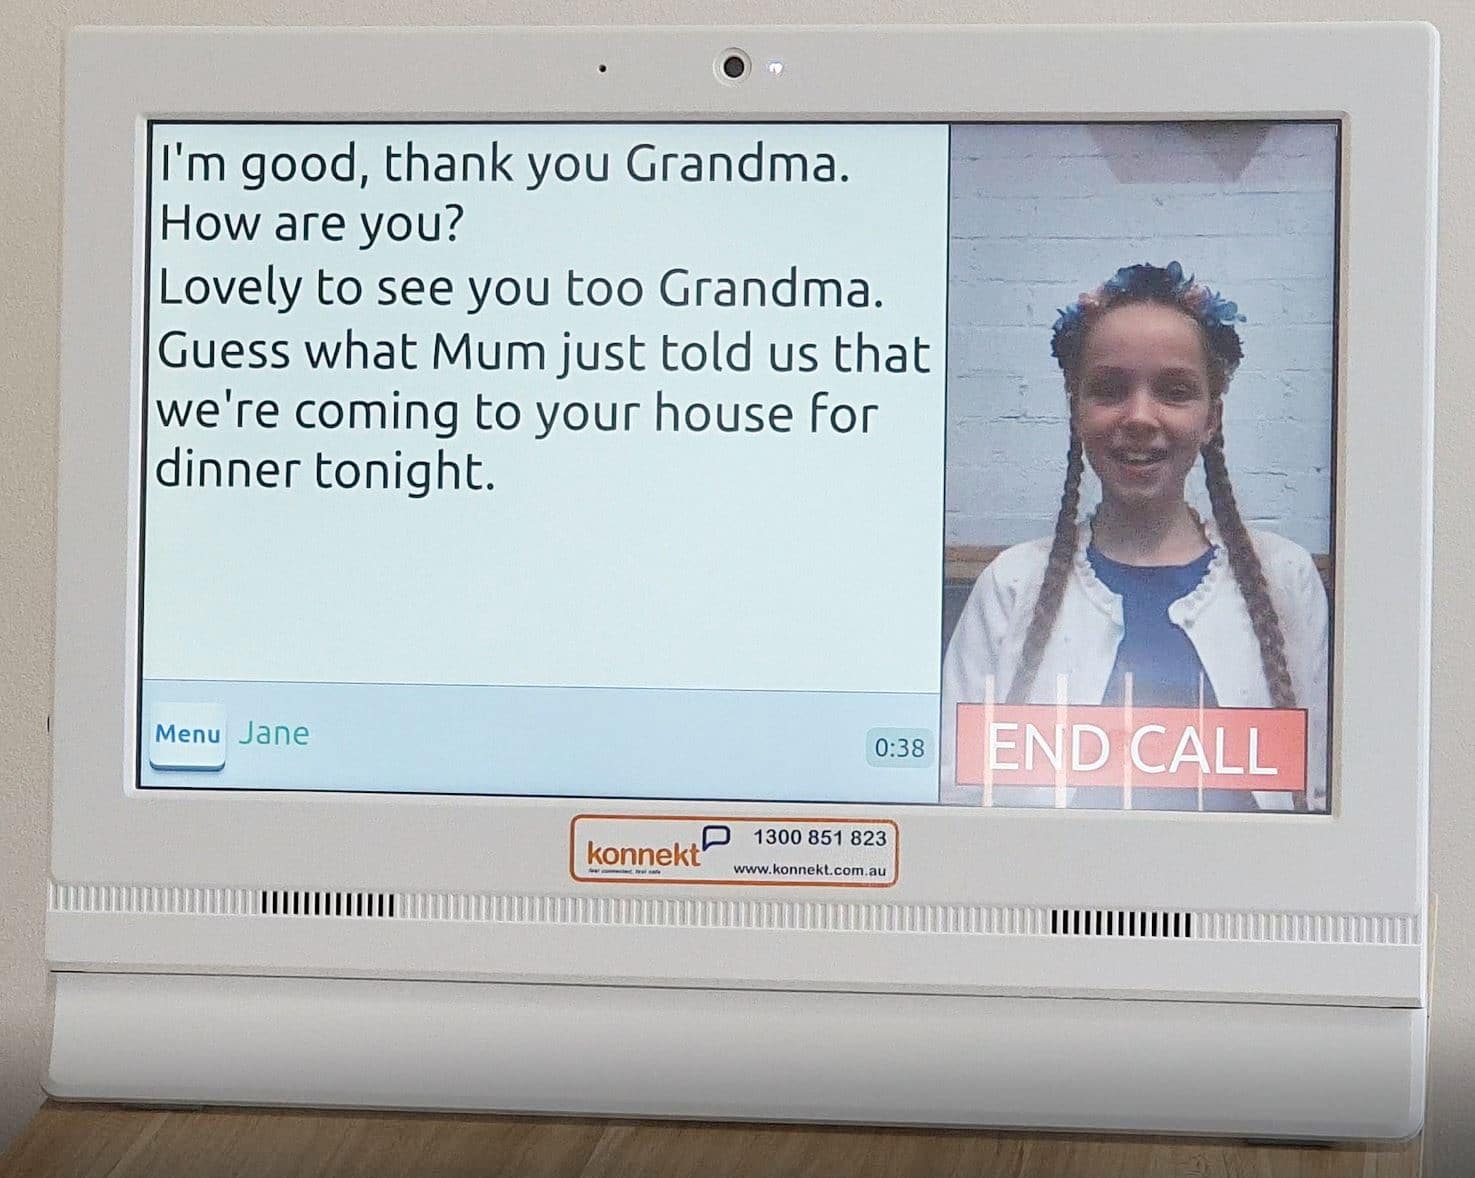 Konnekt Titulkovanie videotelefónu na videohovore s titulkami s mladým dievčaťom, pričom obrazovka zobrazuje konverzáciu veľkým textom